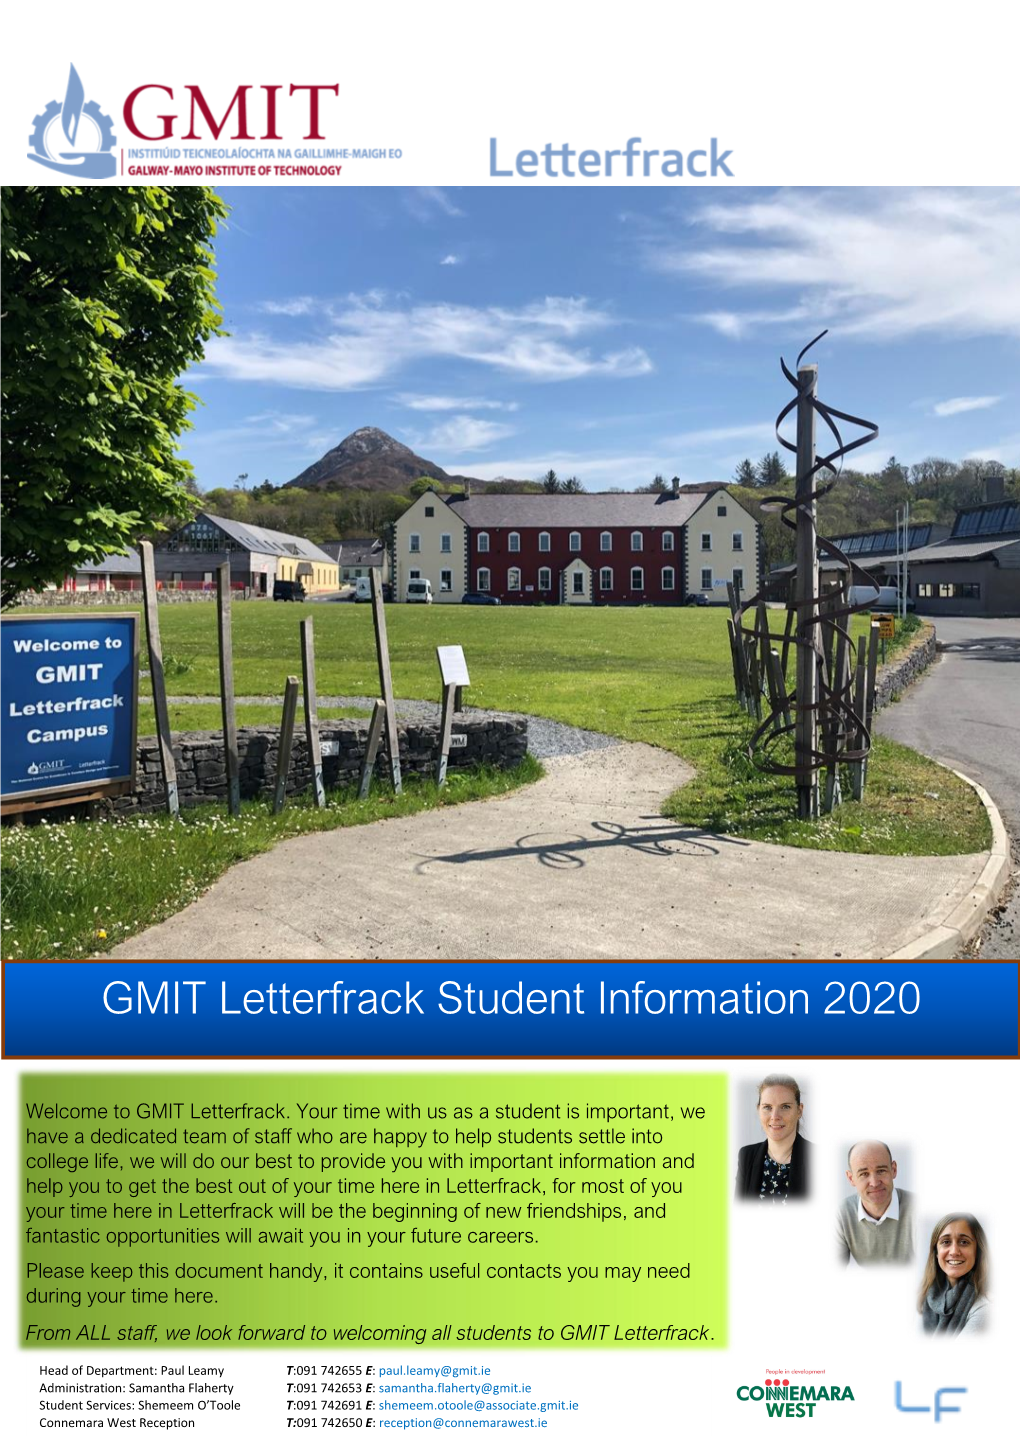 GMIT Letterfrack Student Information 2020